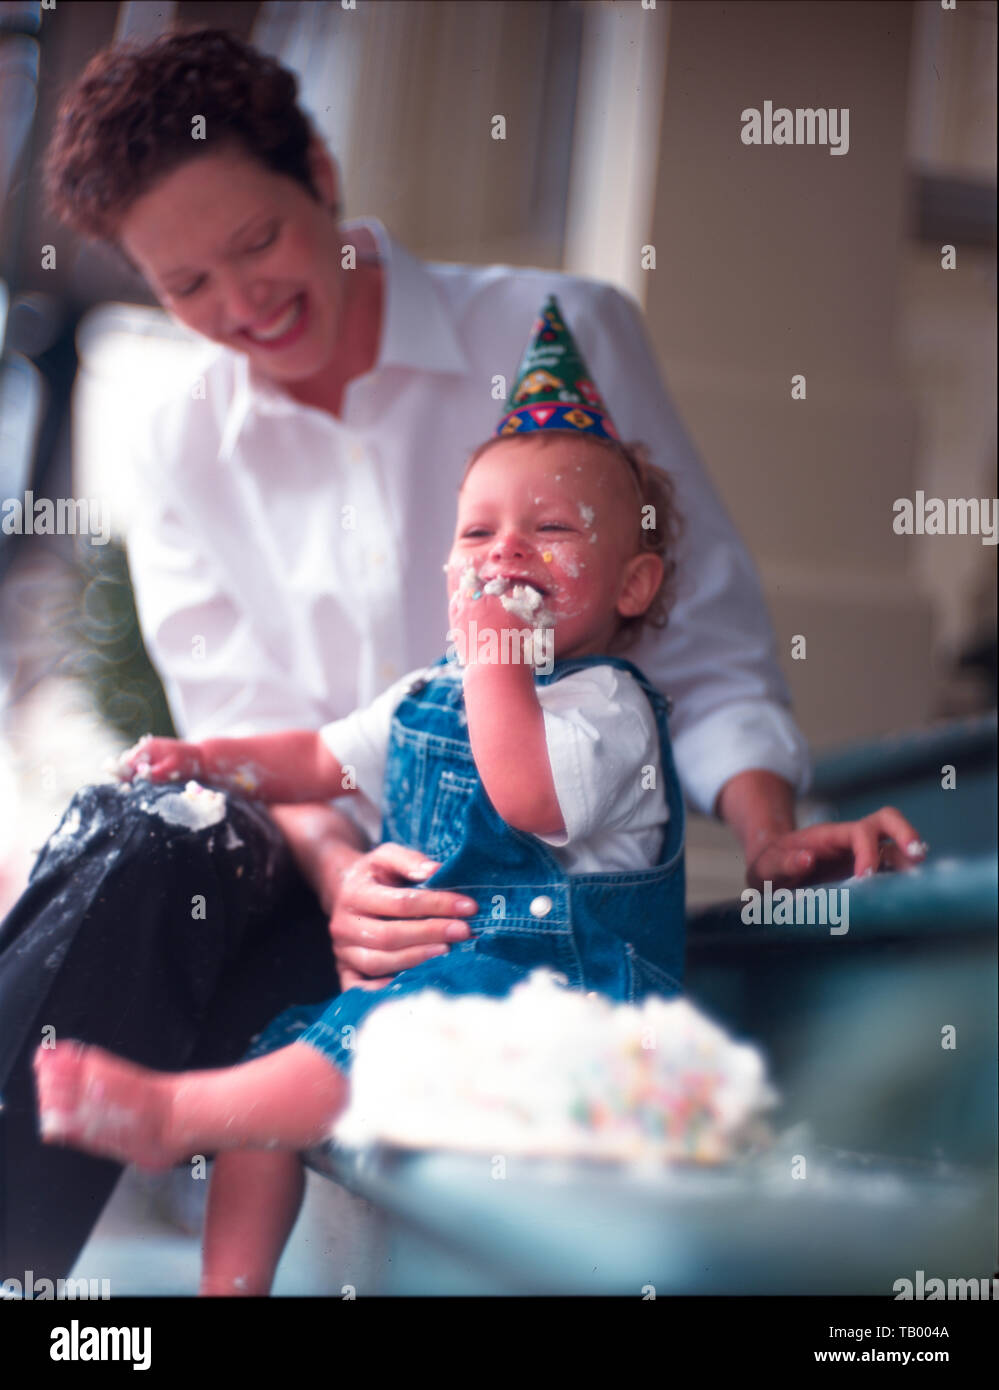 Baby and birthday cake Stock Photo